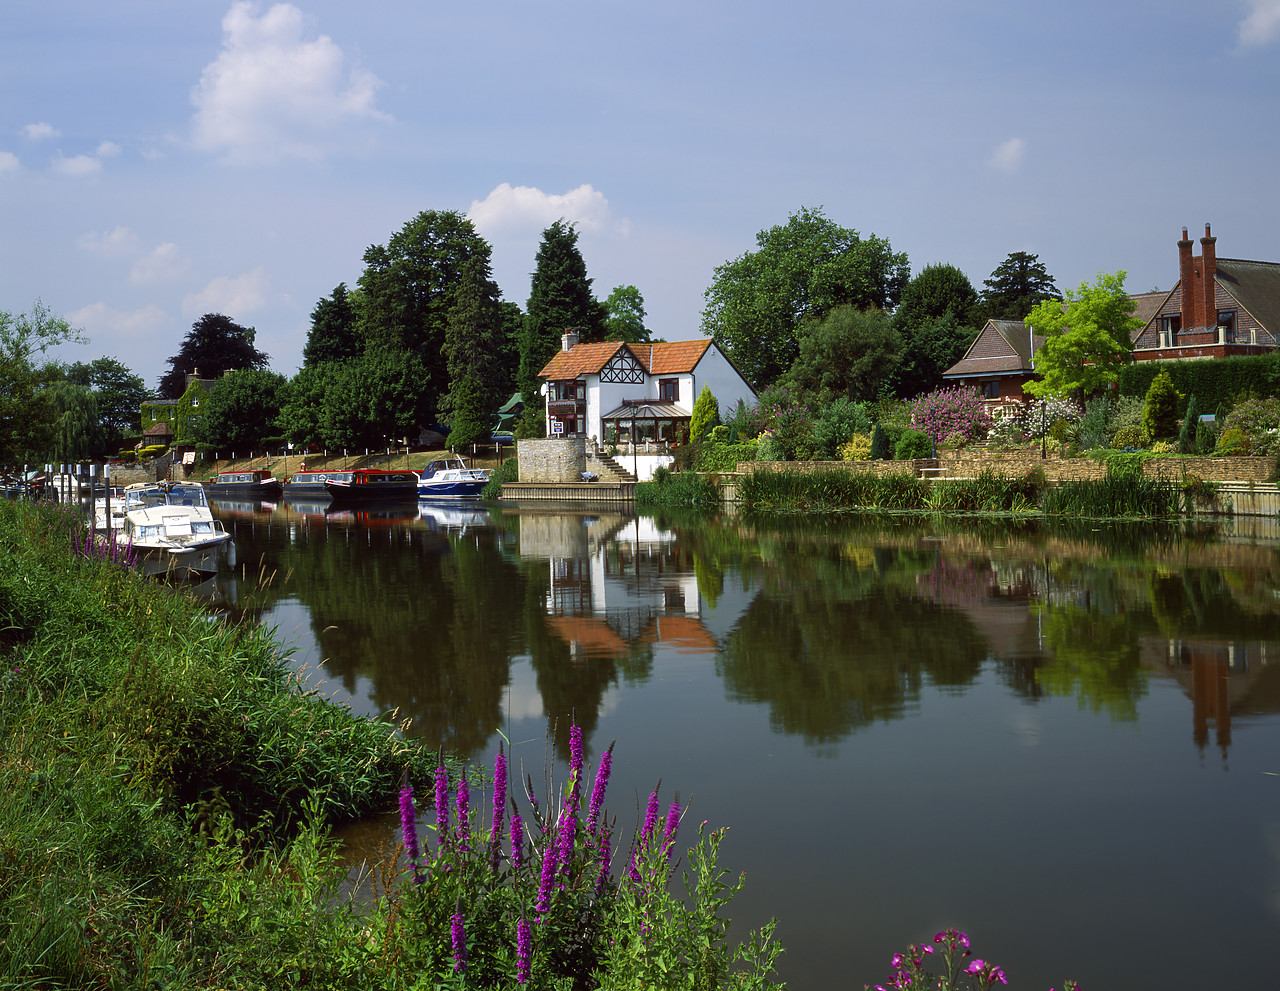 #944800-3 - The River Avon, Bidford-on-Avon, Warwickshire, England